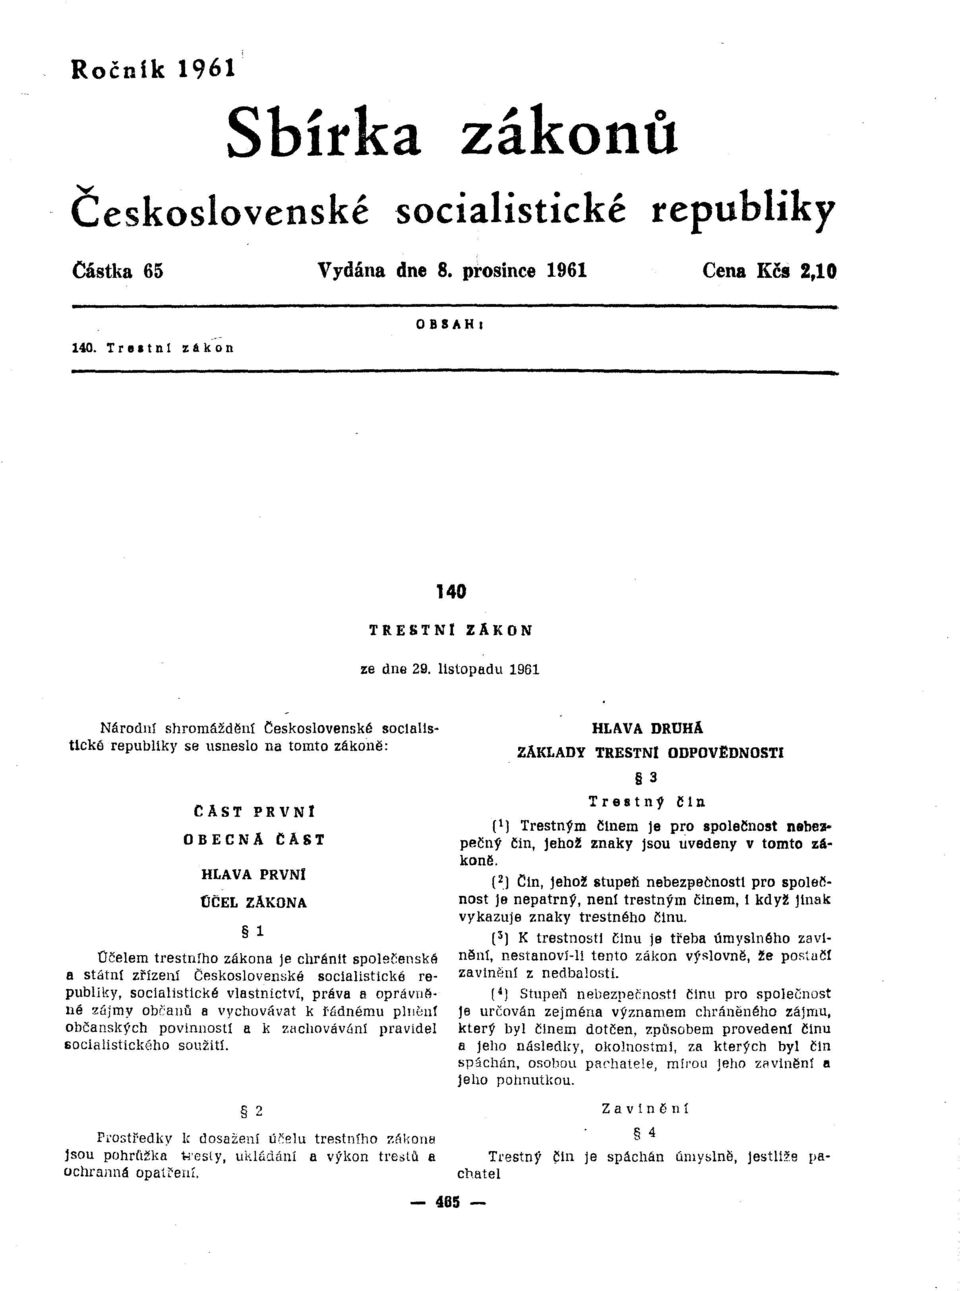 Ceskoslovenské socialistické republiky se usneslo na tomto zákoně: CAST PRVNI OBECNA CAST HLAVA PRVNI tičel ZAKONA 1 Účelem trestního zákona je chránit společenské ft státní zřízení Československé